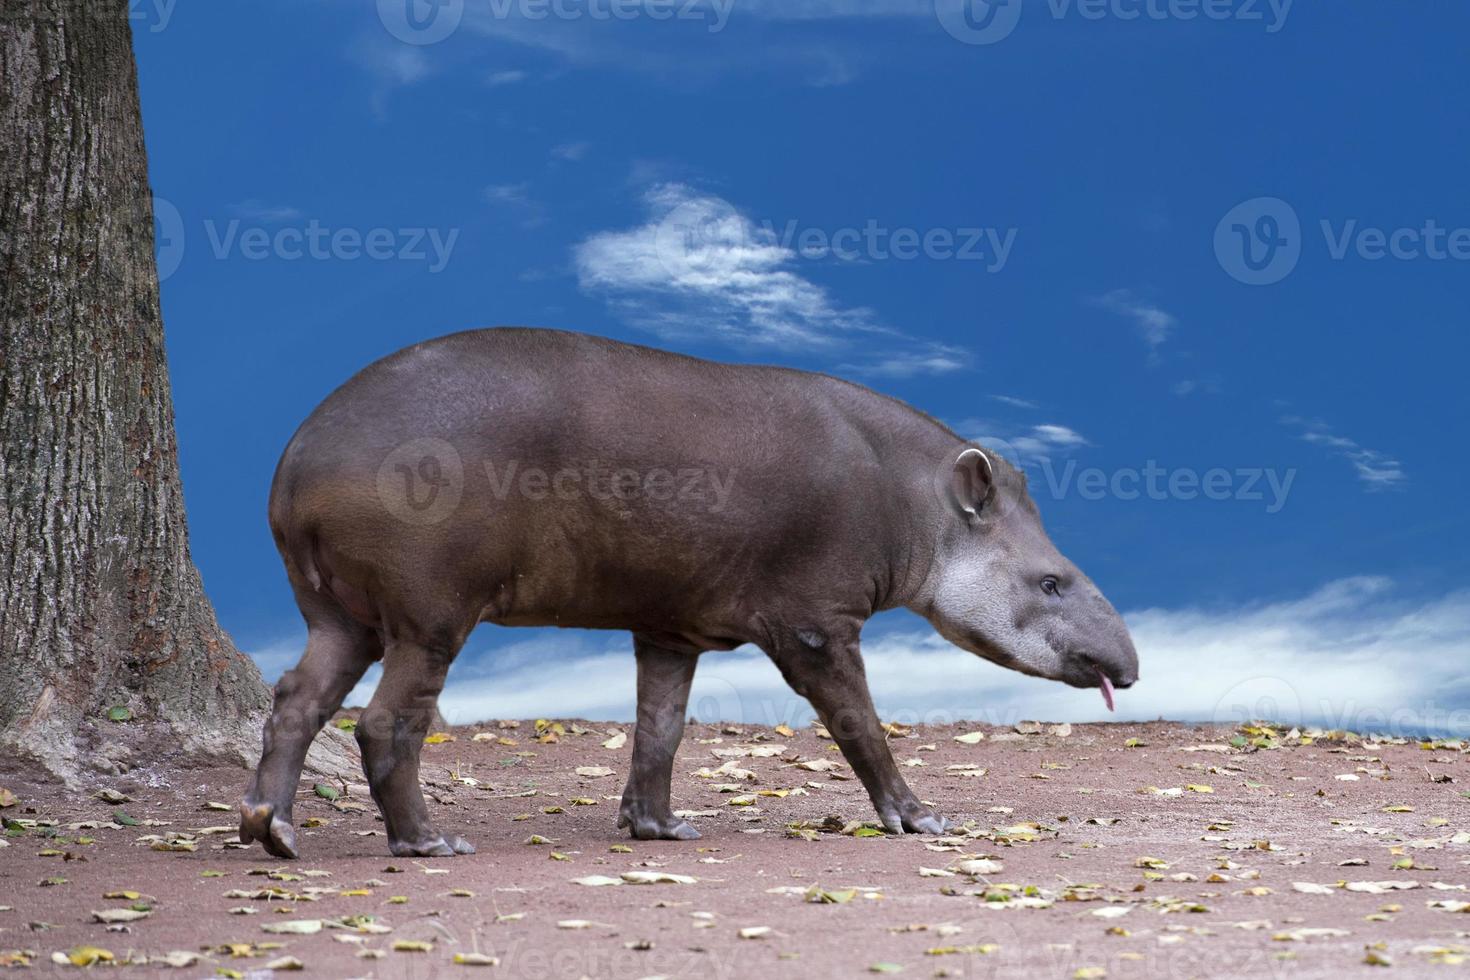 tapiro ritratto mentre guardare a voi foto